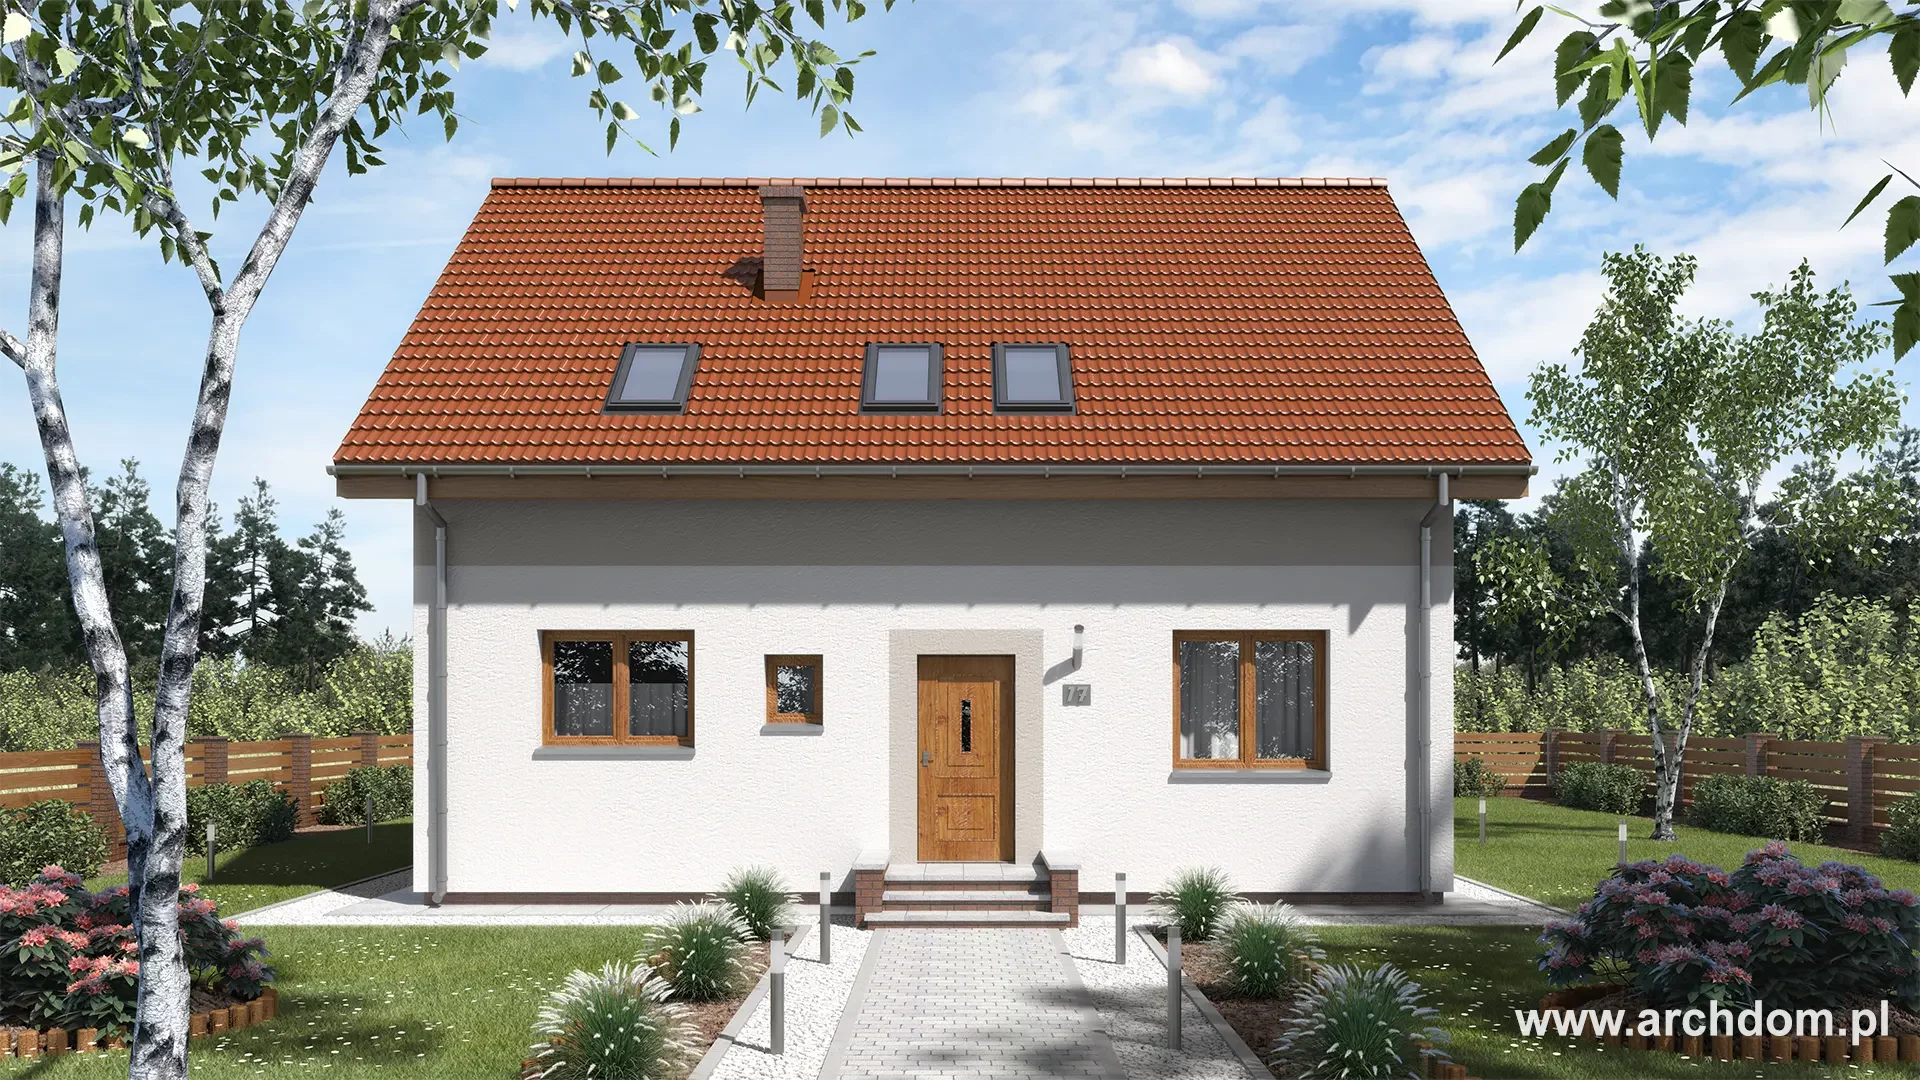 ArchDOM | https://archdom.pl | Projekt domu parterowego z poddaszem użytkowym Begonia 1- wizualizacja domu od frontu